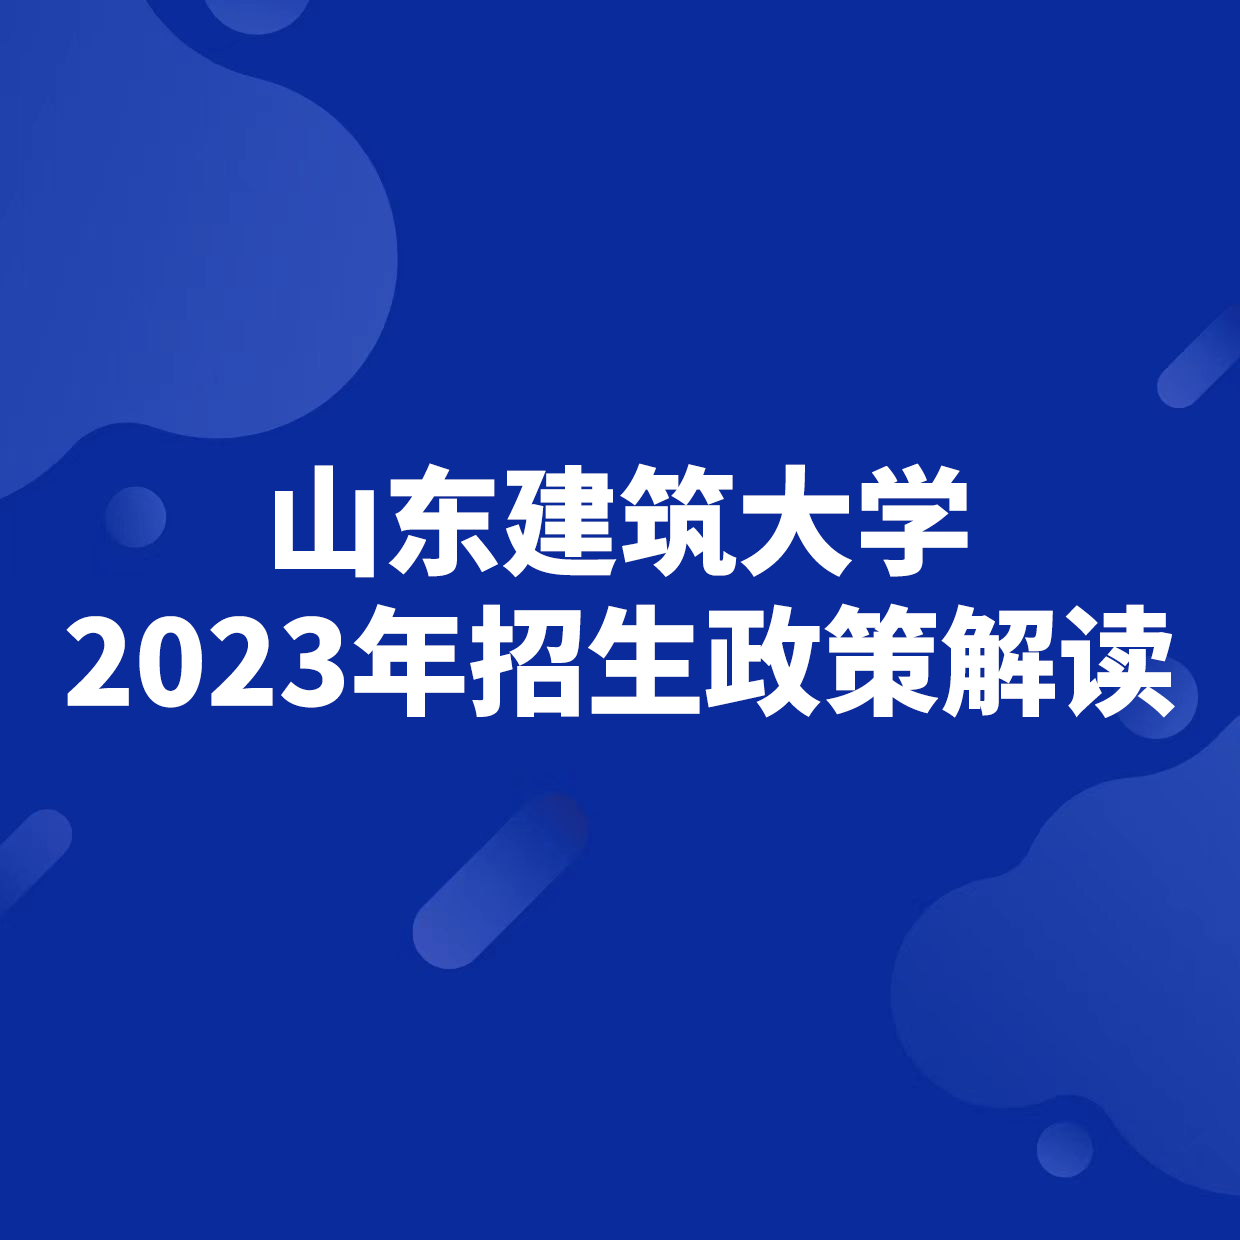 山东建筑大学2023年招生政策解读